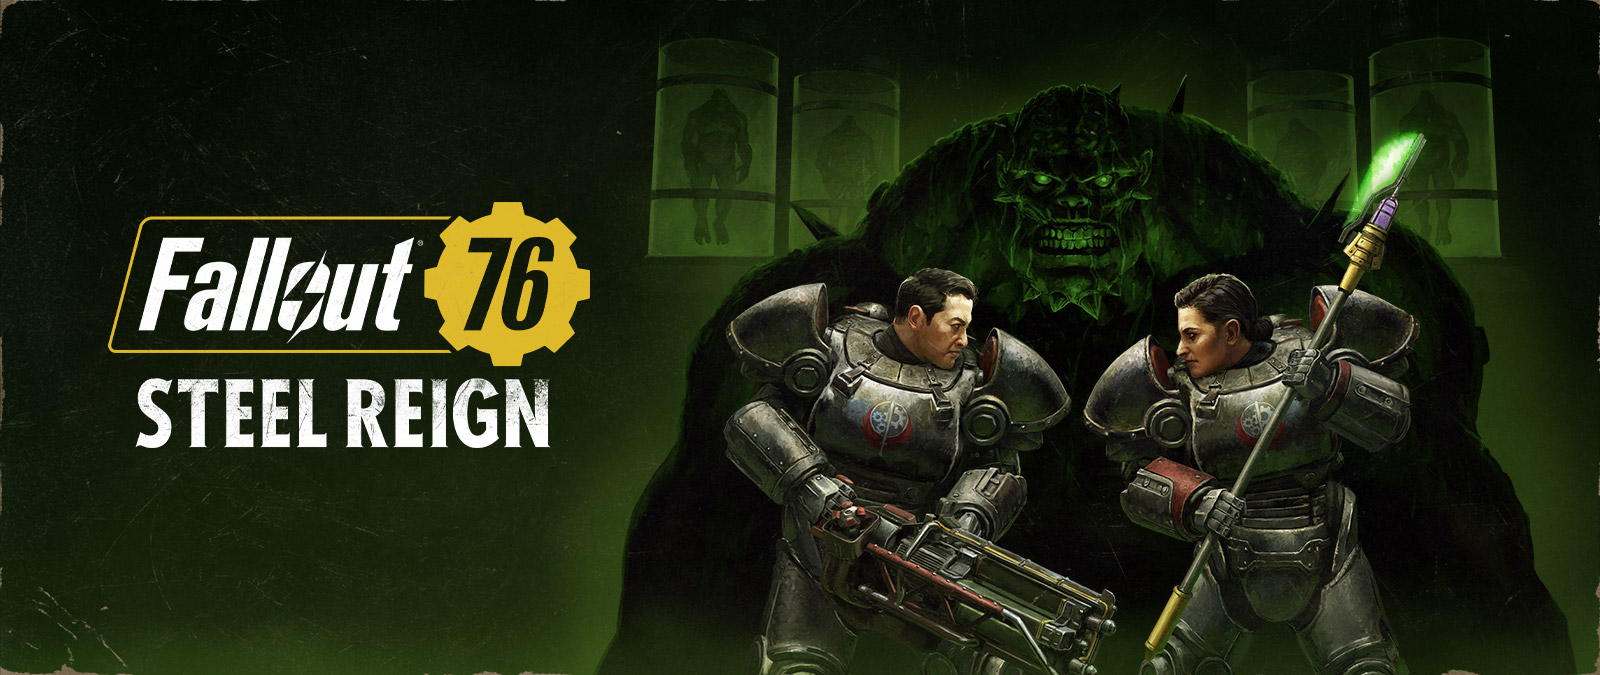 Fallout 76, Steel Reign, To karakterer i mech suits over for et stort monster i baggrunden.